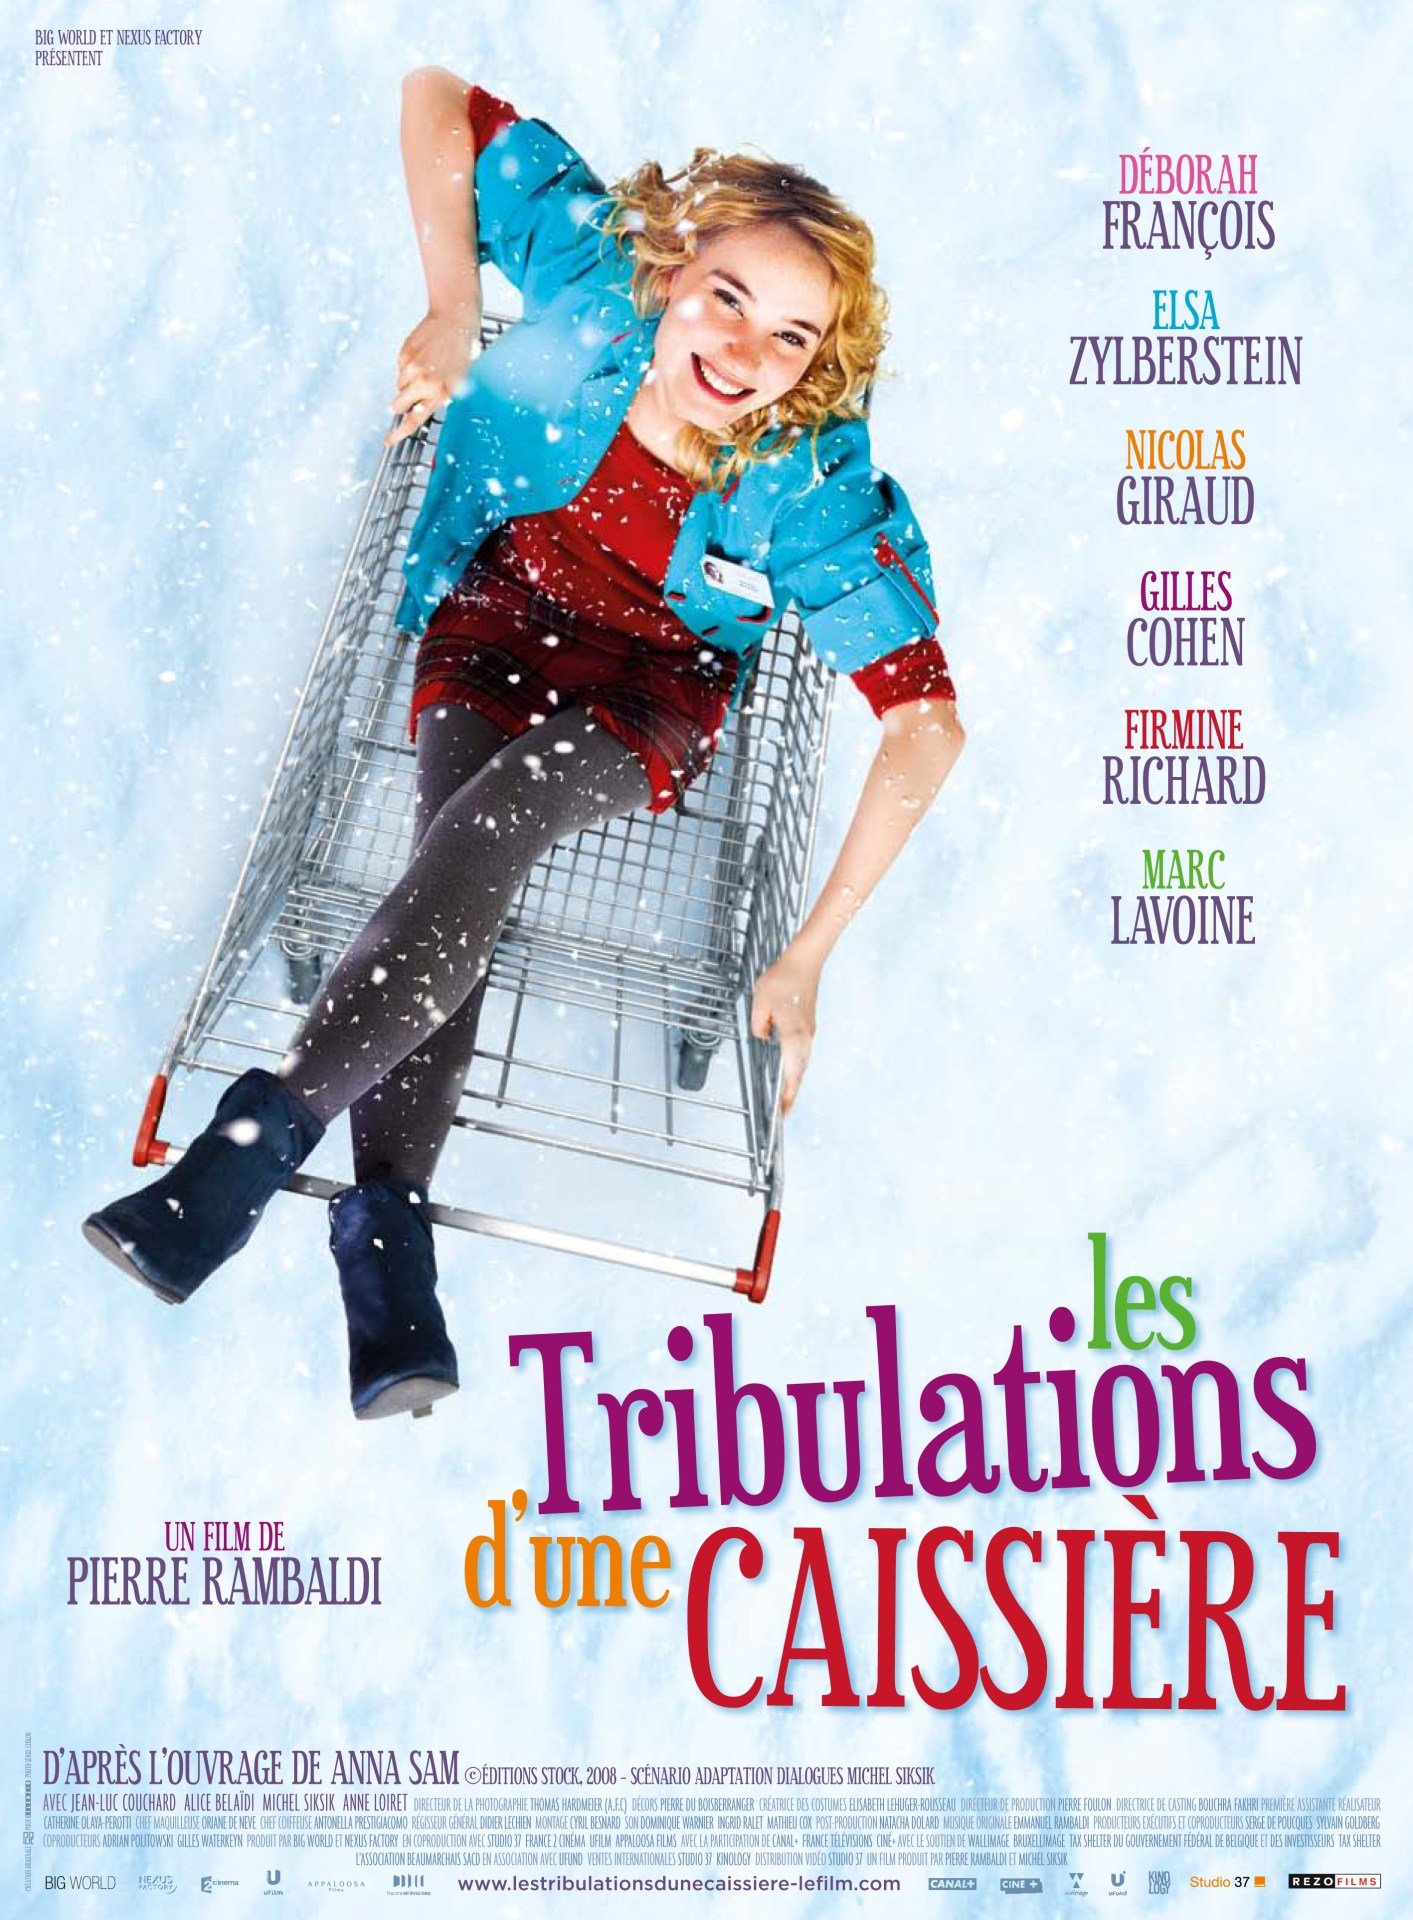 Poster of the movie Les Tribulations d'une caissière